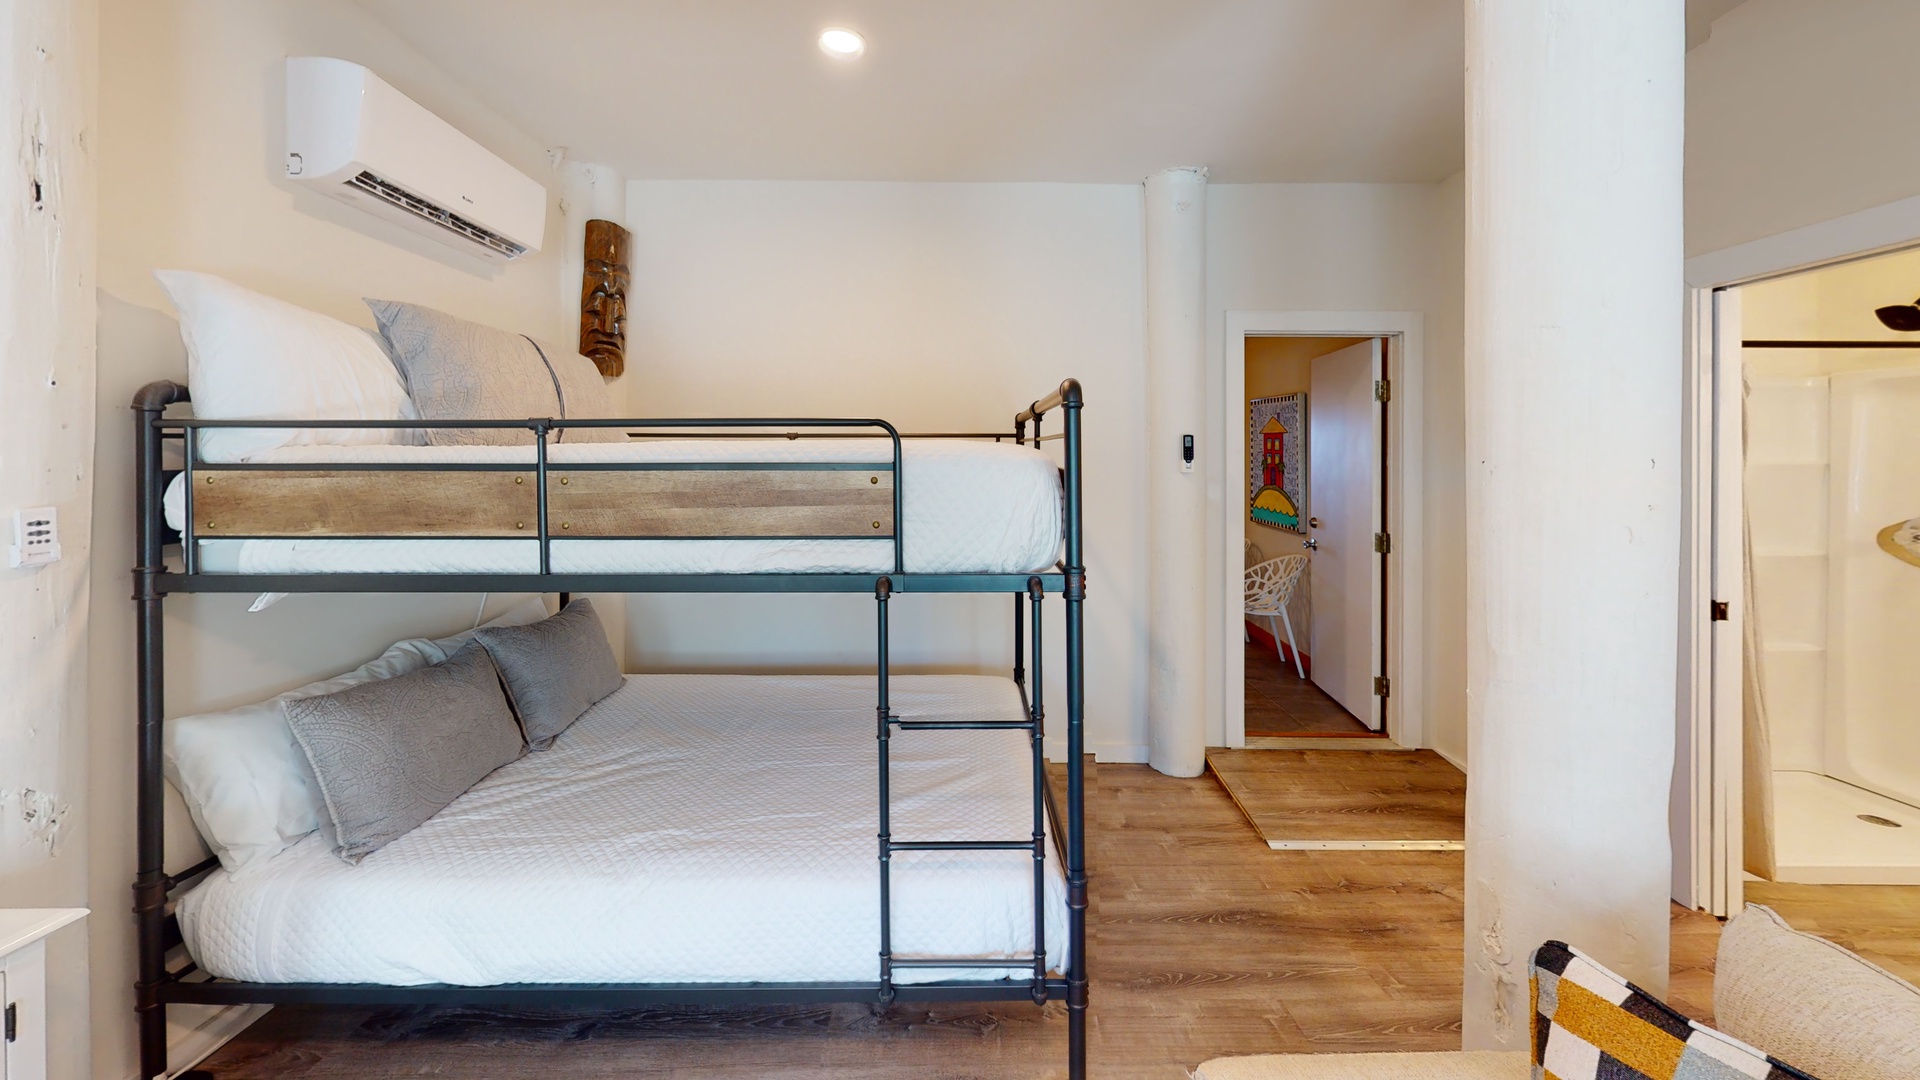 This bedroom sleeps 4 in a queen over queen bunk bed